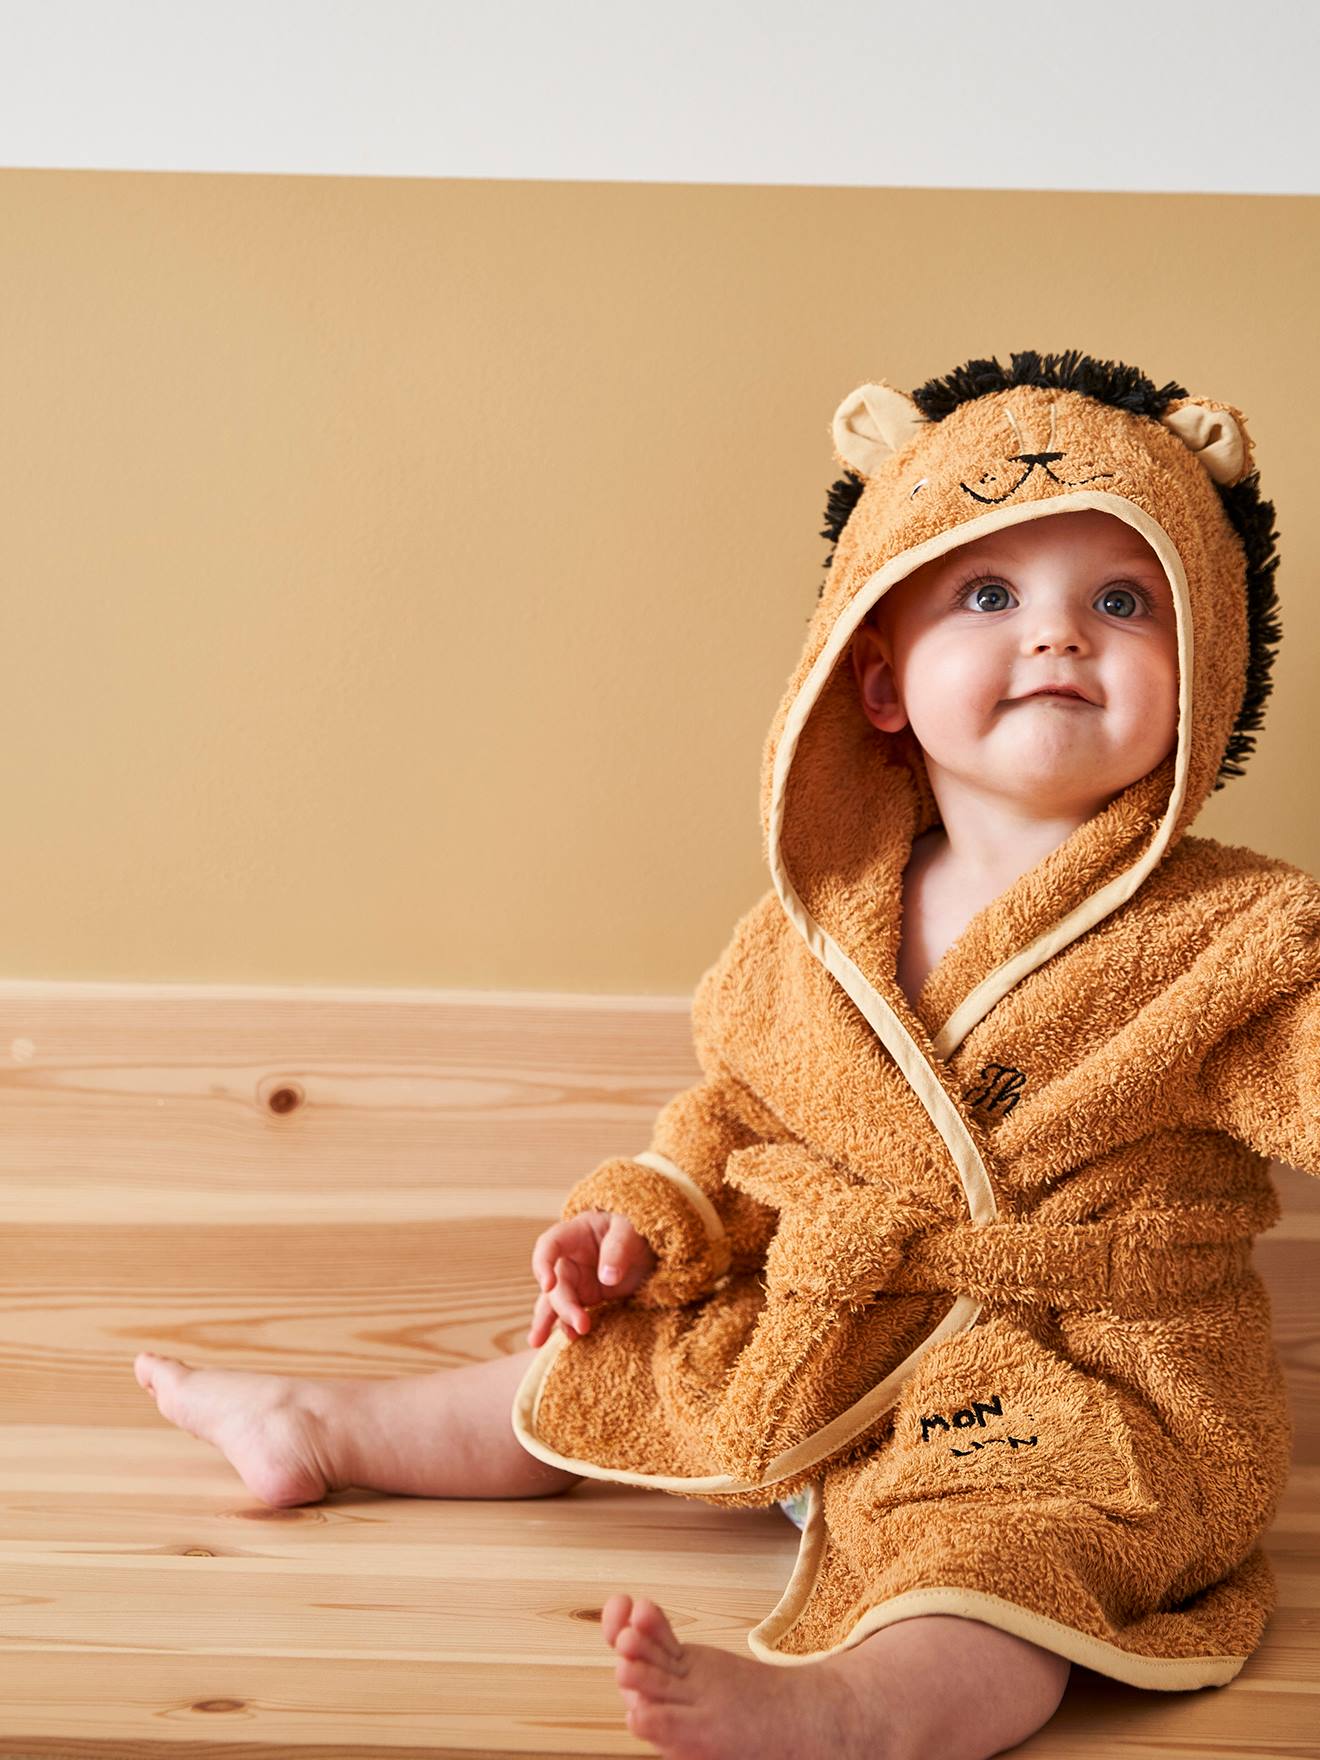 URBEAR Unisex Bébé Mignon Animal Peignoir en Coton Enfant Plage Capuche Serviette Soirée de Bain pour Bébé 12-36 mois 